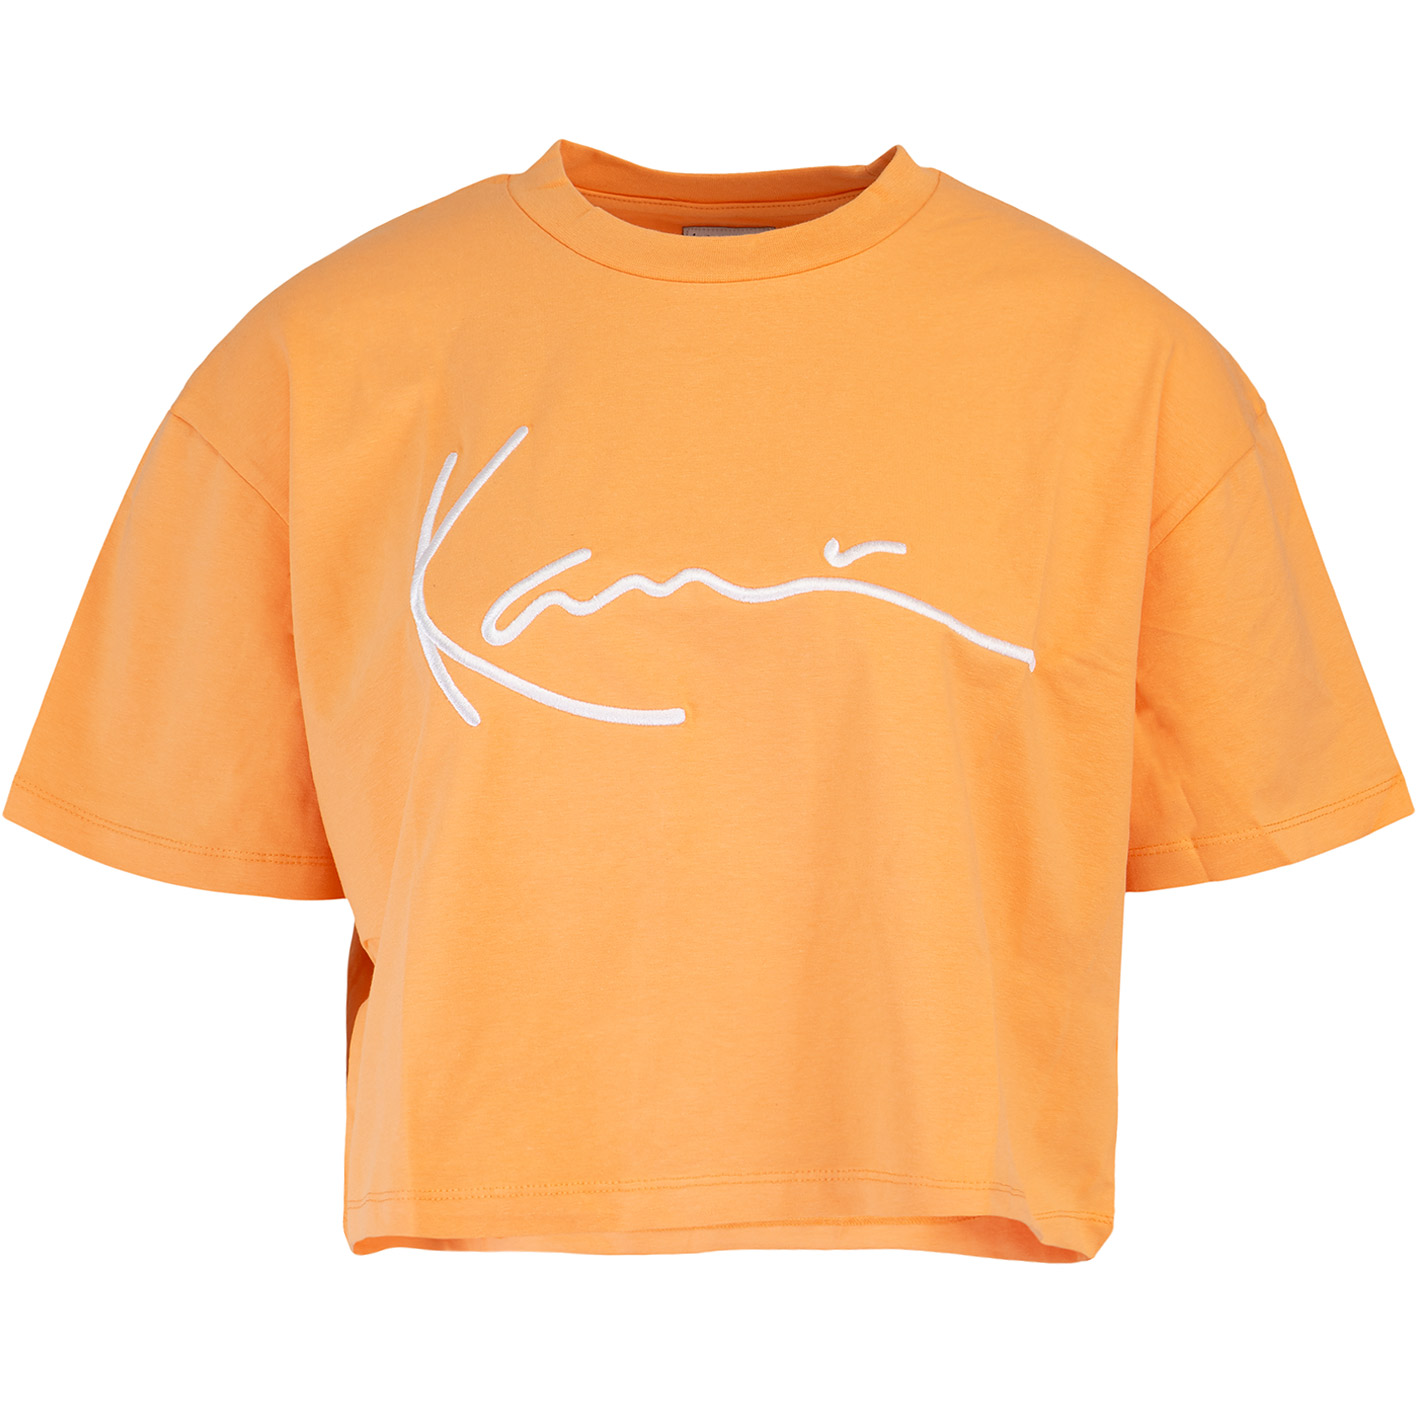 ☆ Karl Kani Signature Damen T-Shirt orange - hier bestellen!